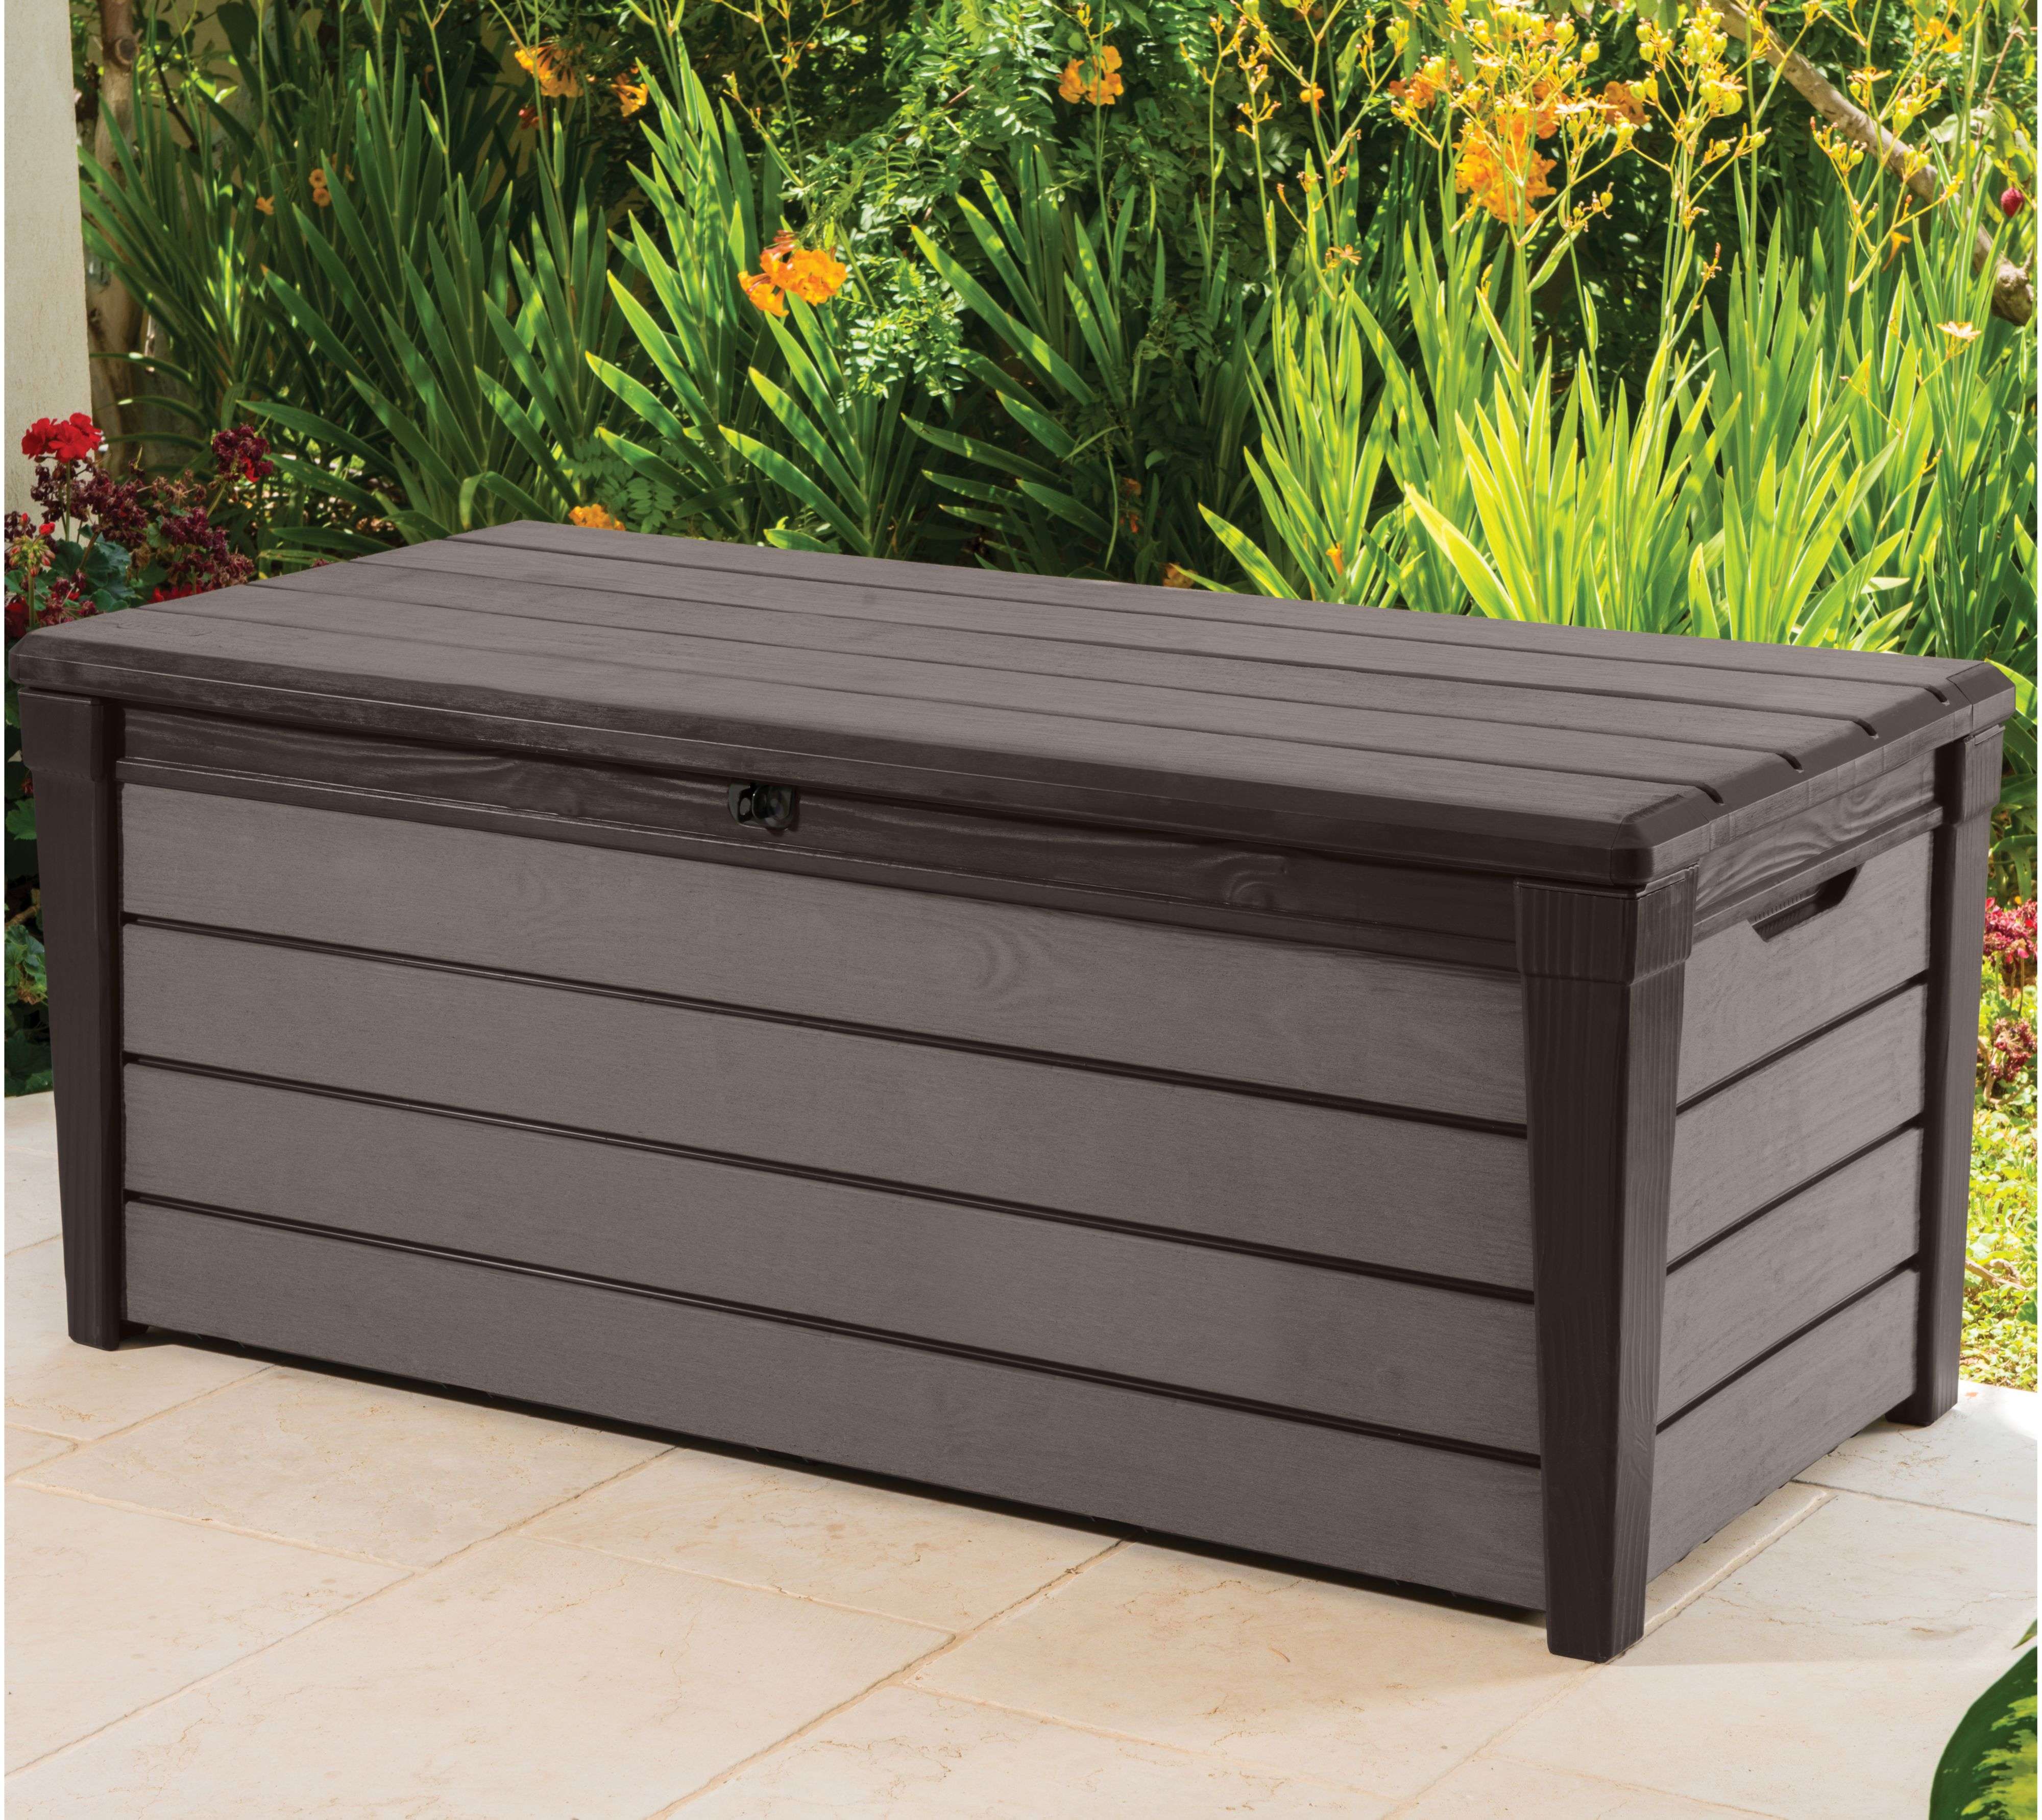 Bench Garden Storage Box Outdoor Bin Waterproof Containers Design Of ...